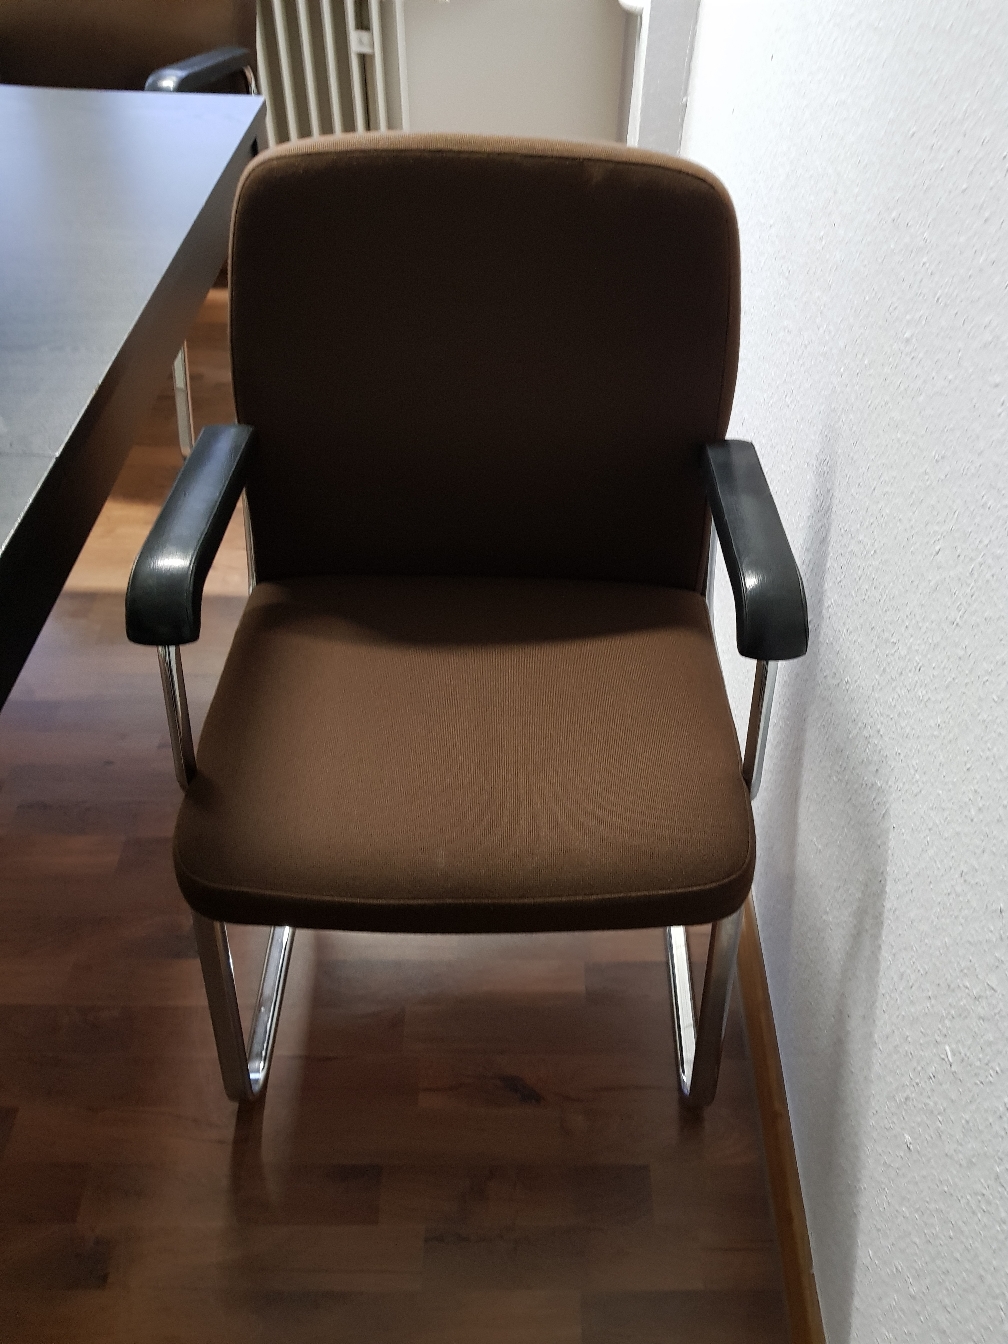 Stabiler Stühle gut erhalten  zb.für Meetingsraum 5 Stück auf Lager .Pro Stück 20€